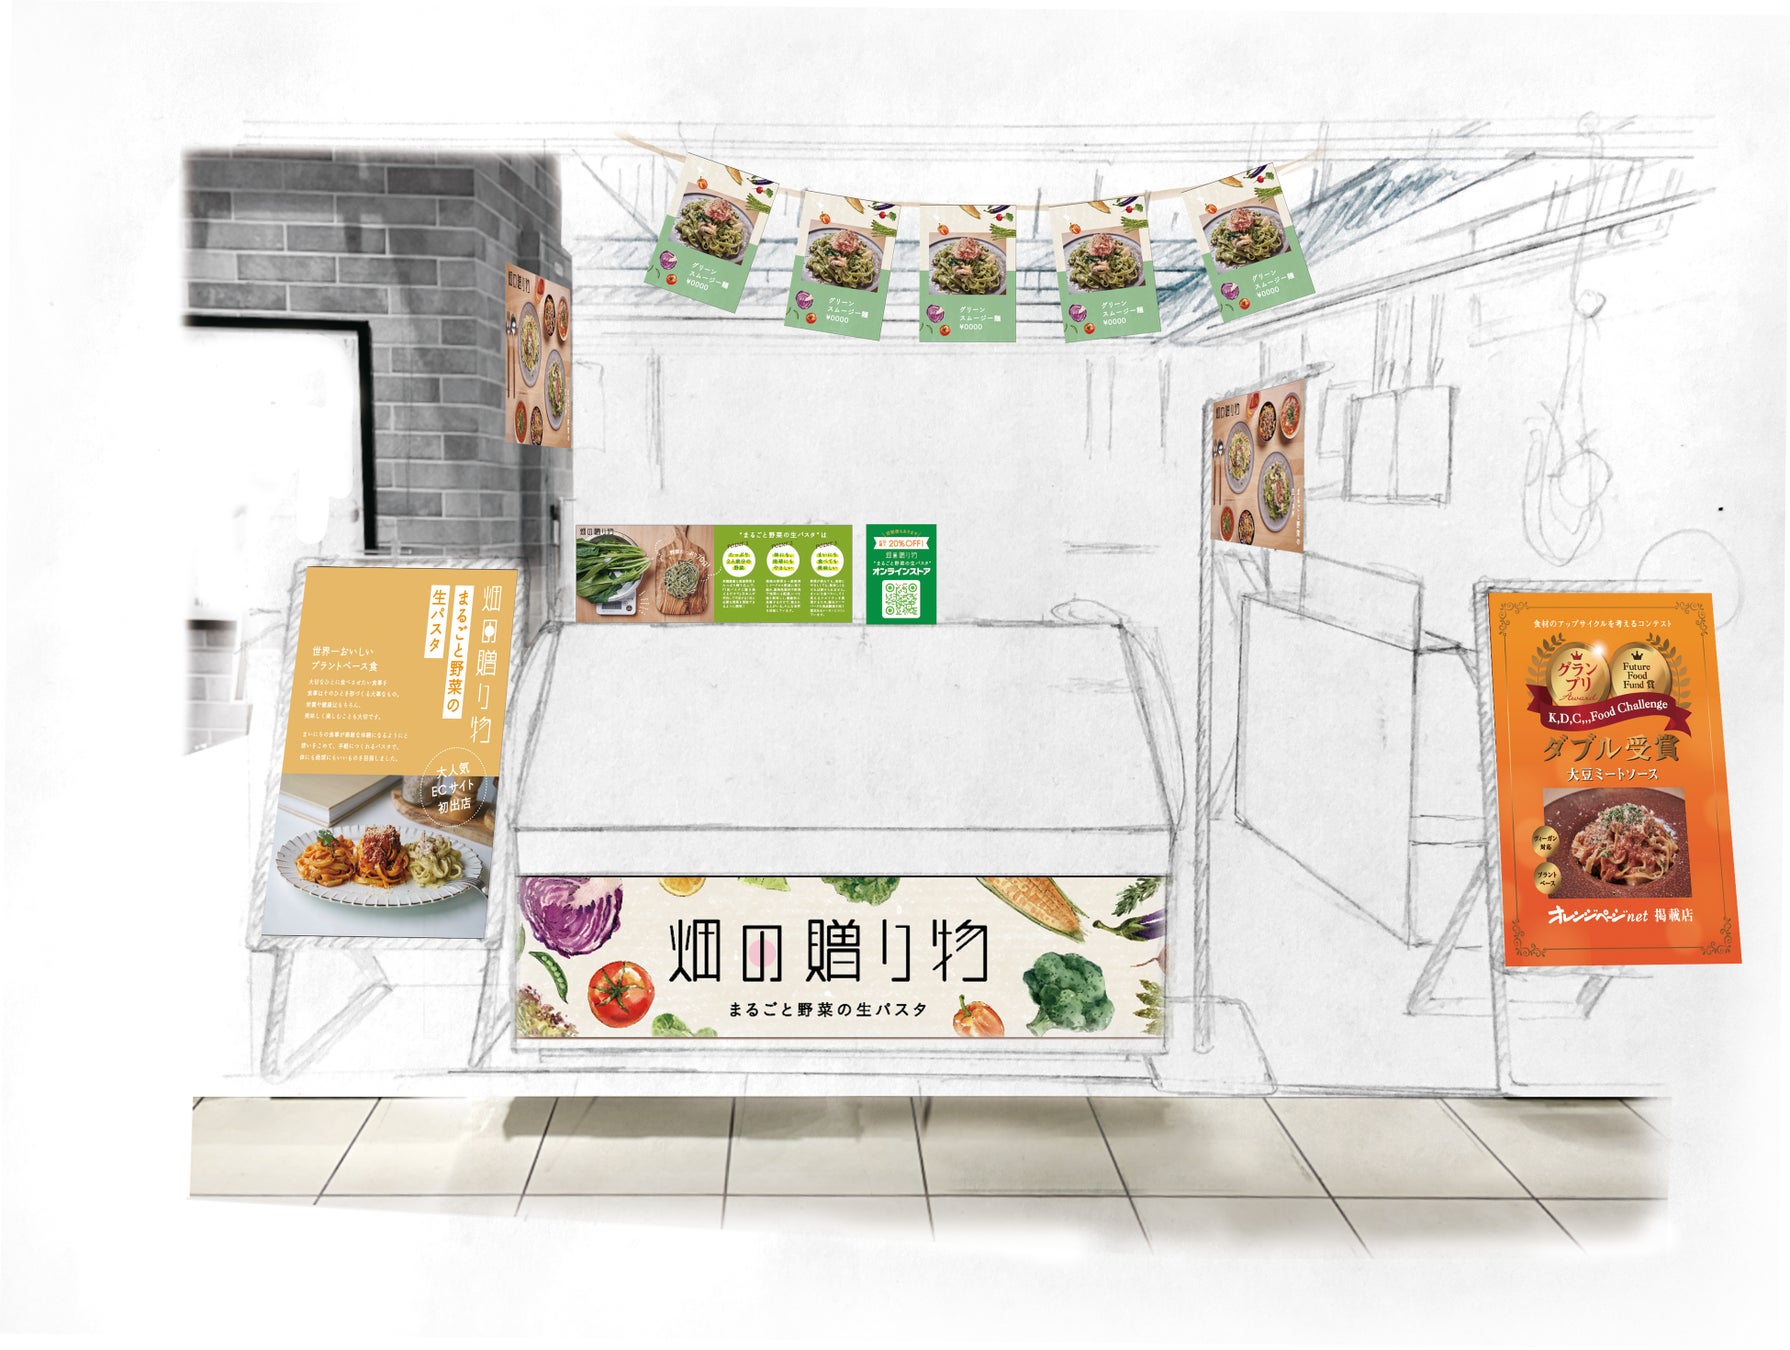 グランプリ受賞の食品ライフスタイルブランド『畑の贈り物』が、北千住マルイにてPOP-UP初出店のサブ画像1_POP-UPストアのイメージ